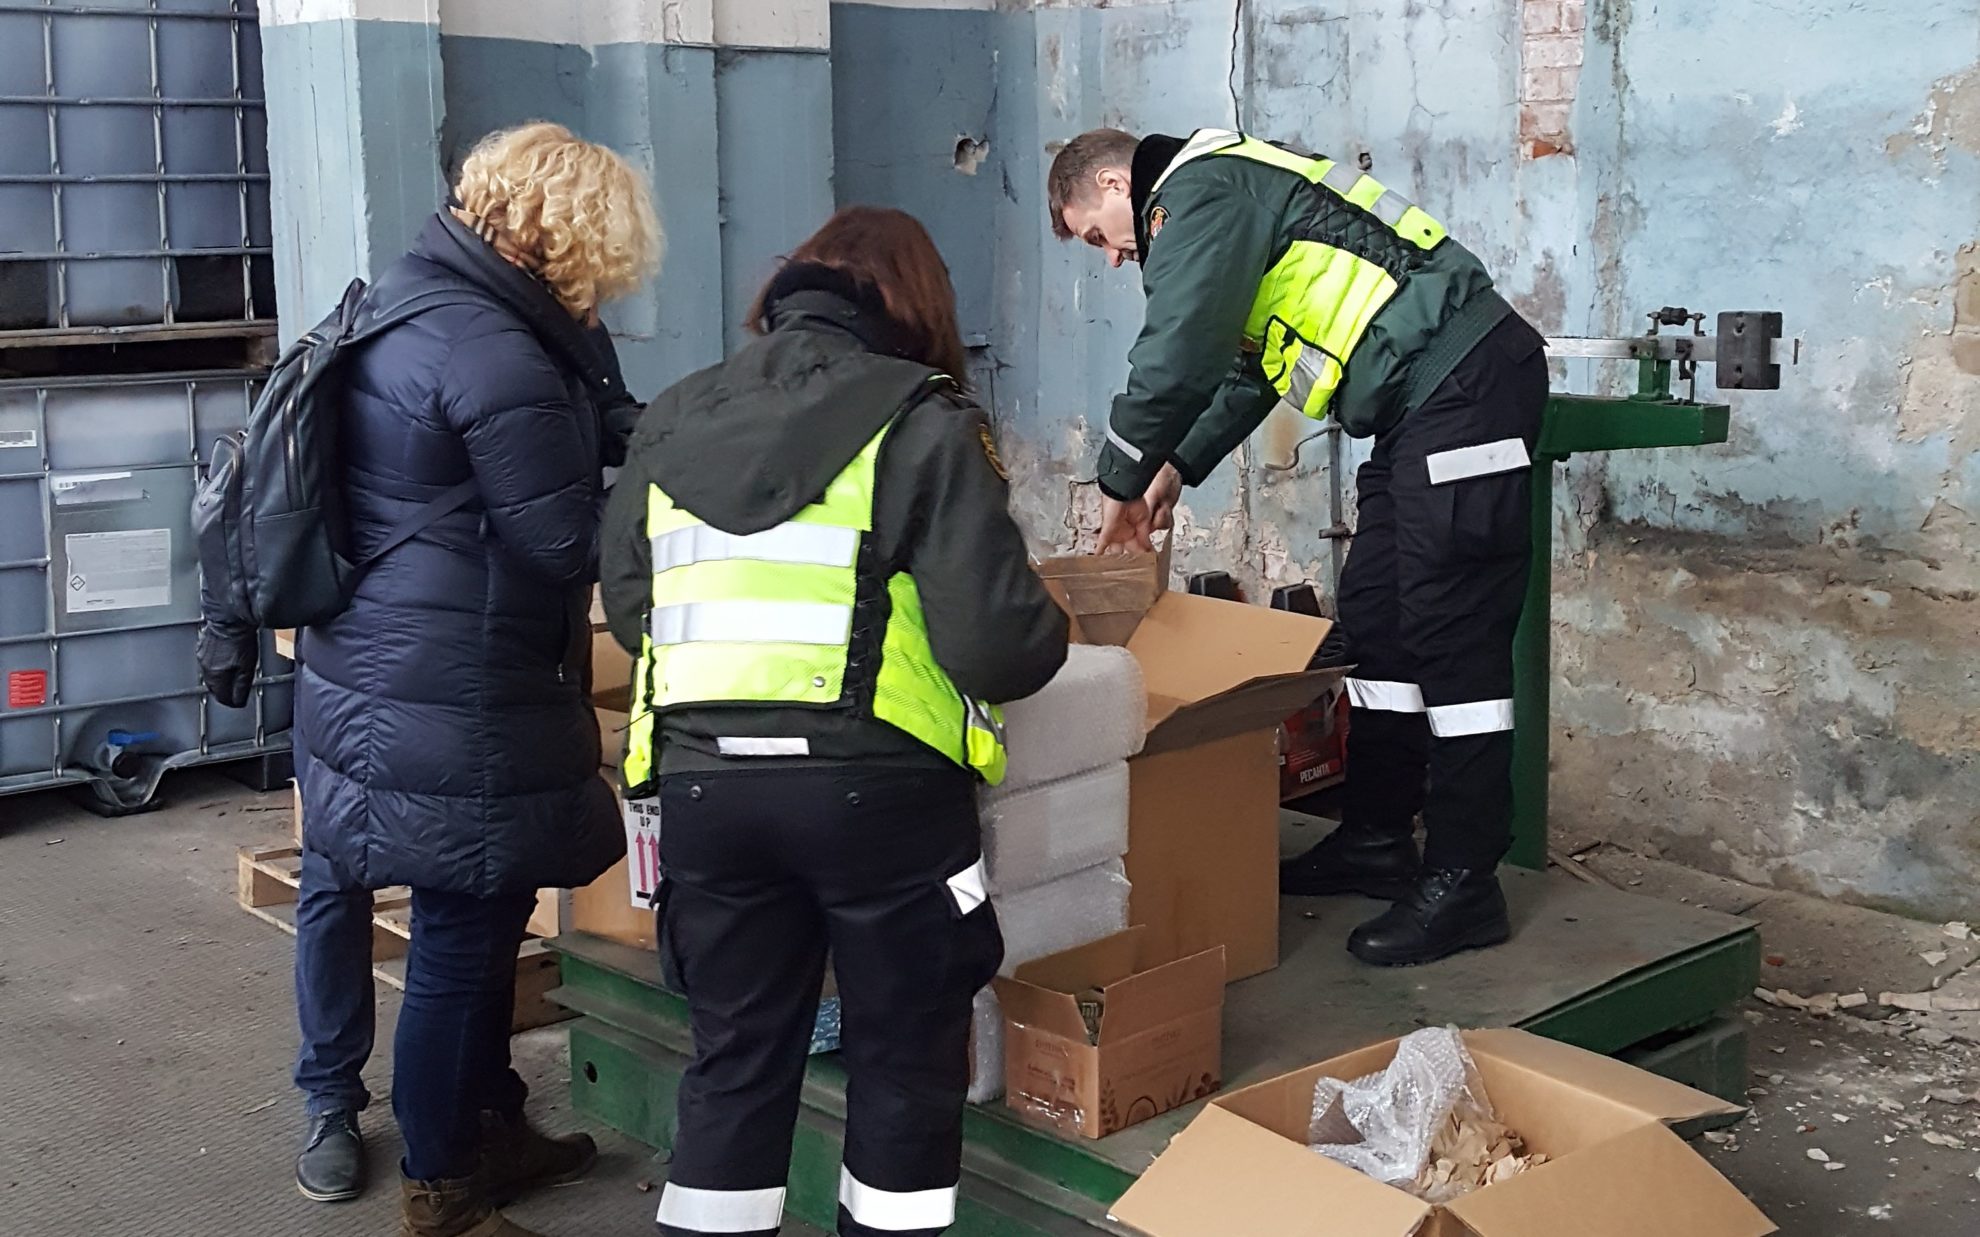 Lietuvos muitinė kartu su Valstybine maisto ir veterinarijos tarnyba dalyvavo EUROPOLO ir INTERPOLO koordinuojamoje operacijoje OPSON VIII, skirtoje kovai su suklastotu maistu ir gėrimais.